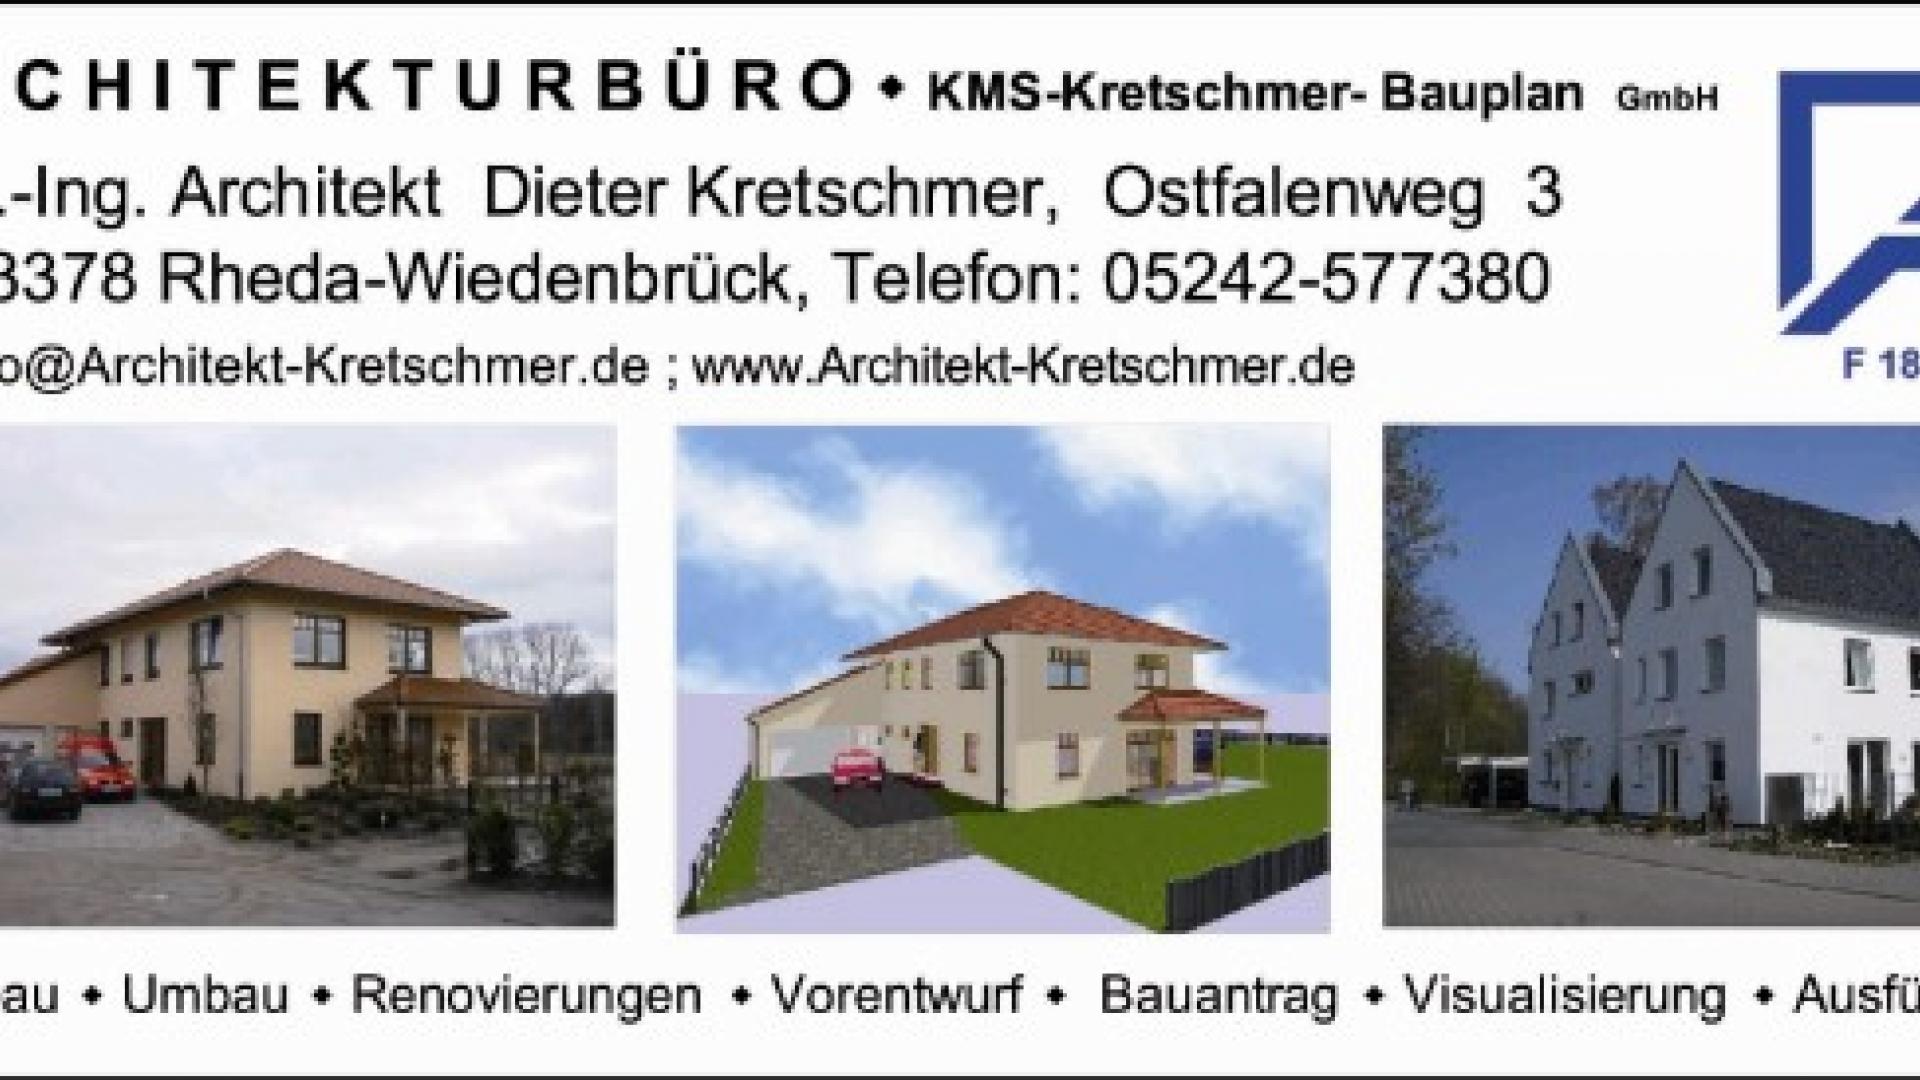 KMS-Kretschmer-Bauplan GmbH